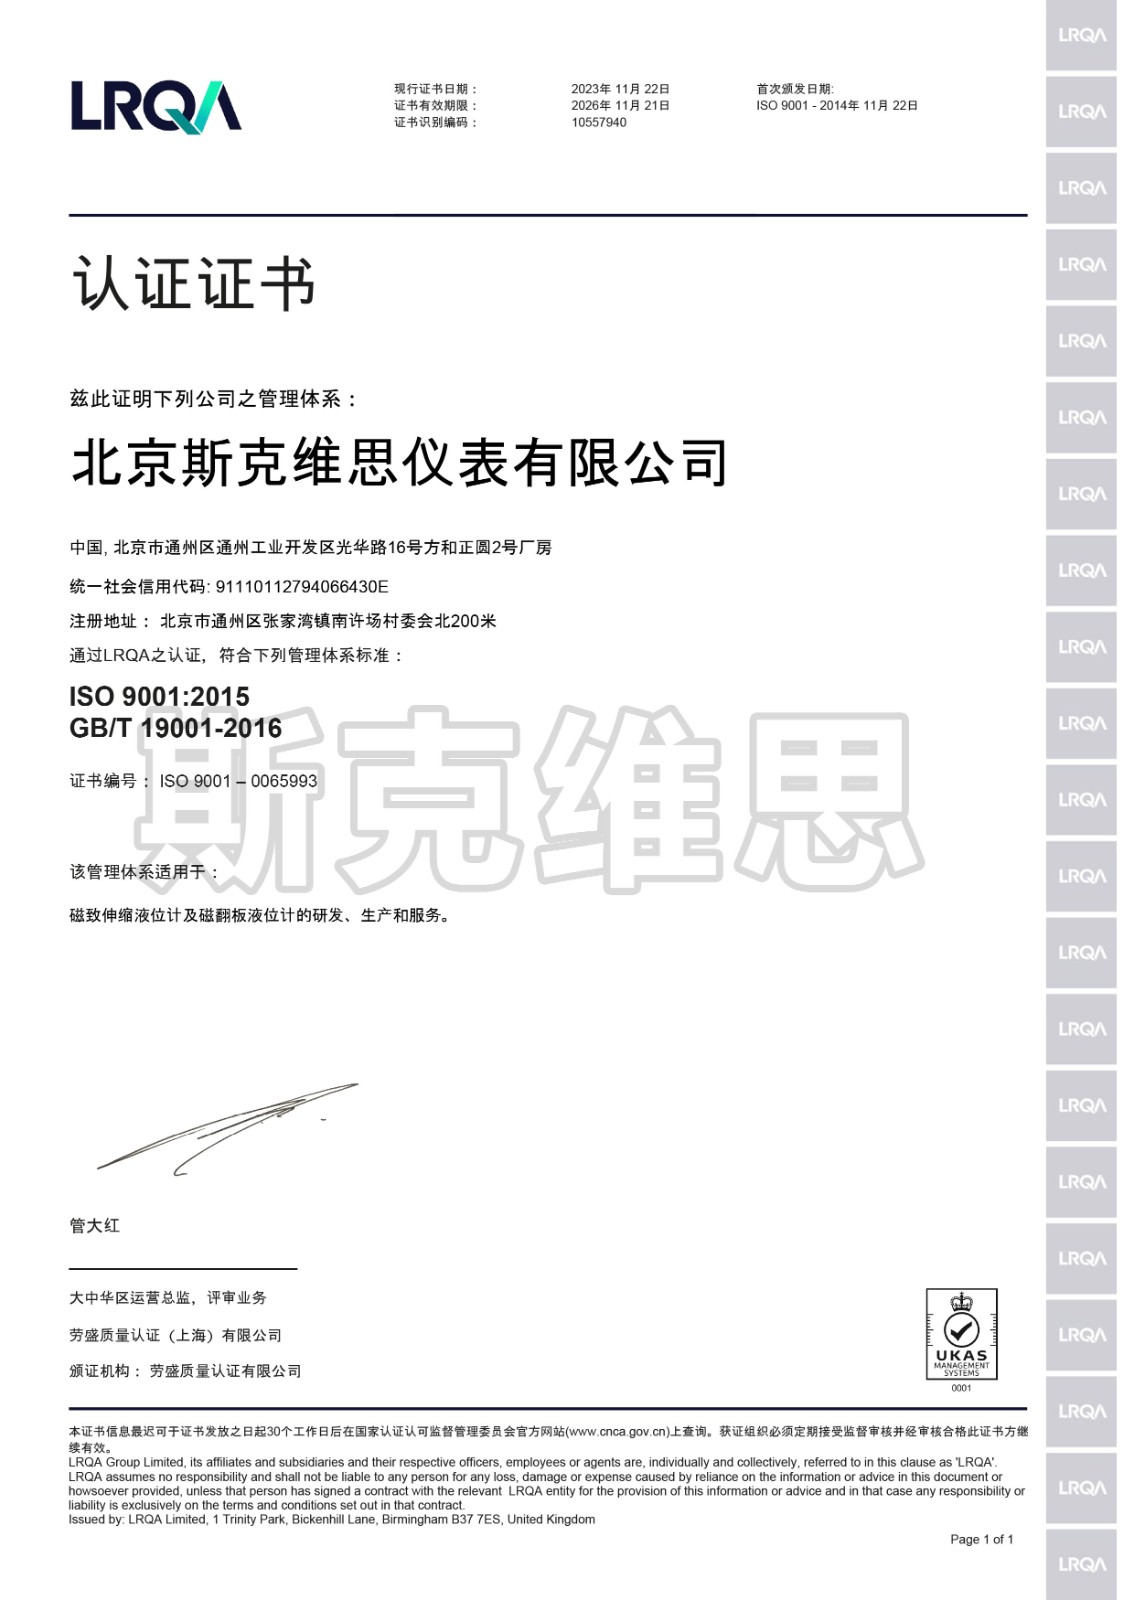 鼓楼ISO 9001 劳式质量认证证书